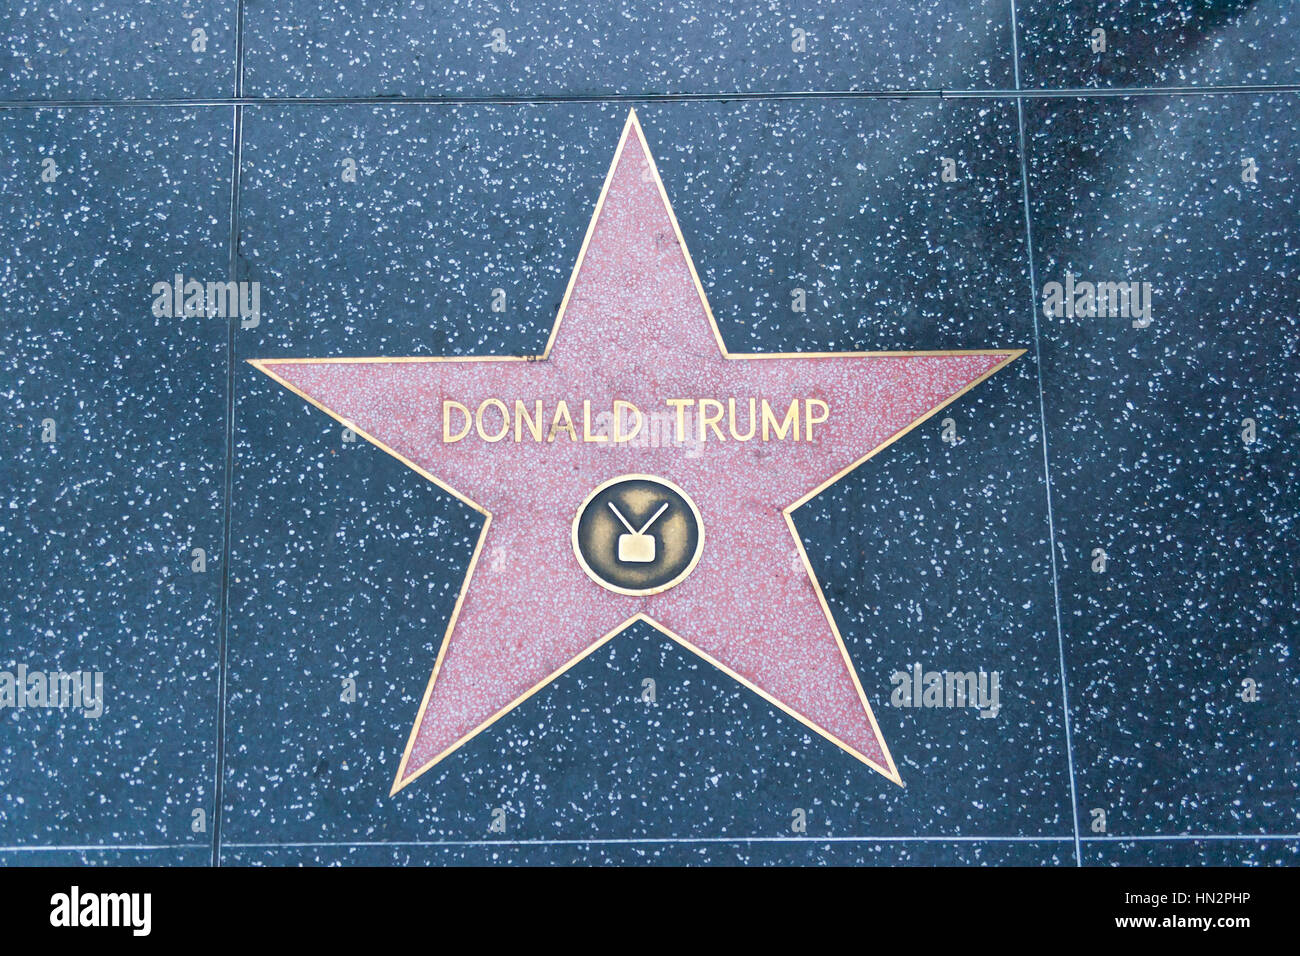 Die Hollywood Walk von Fame, California, Vereinigte Staaten von Amerika.  Zukunft-Präsident Donald Trump Stern des Ruhmes. Donald John Trump, 1946 geboren. Stockfoto